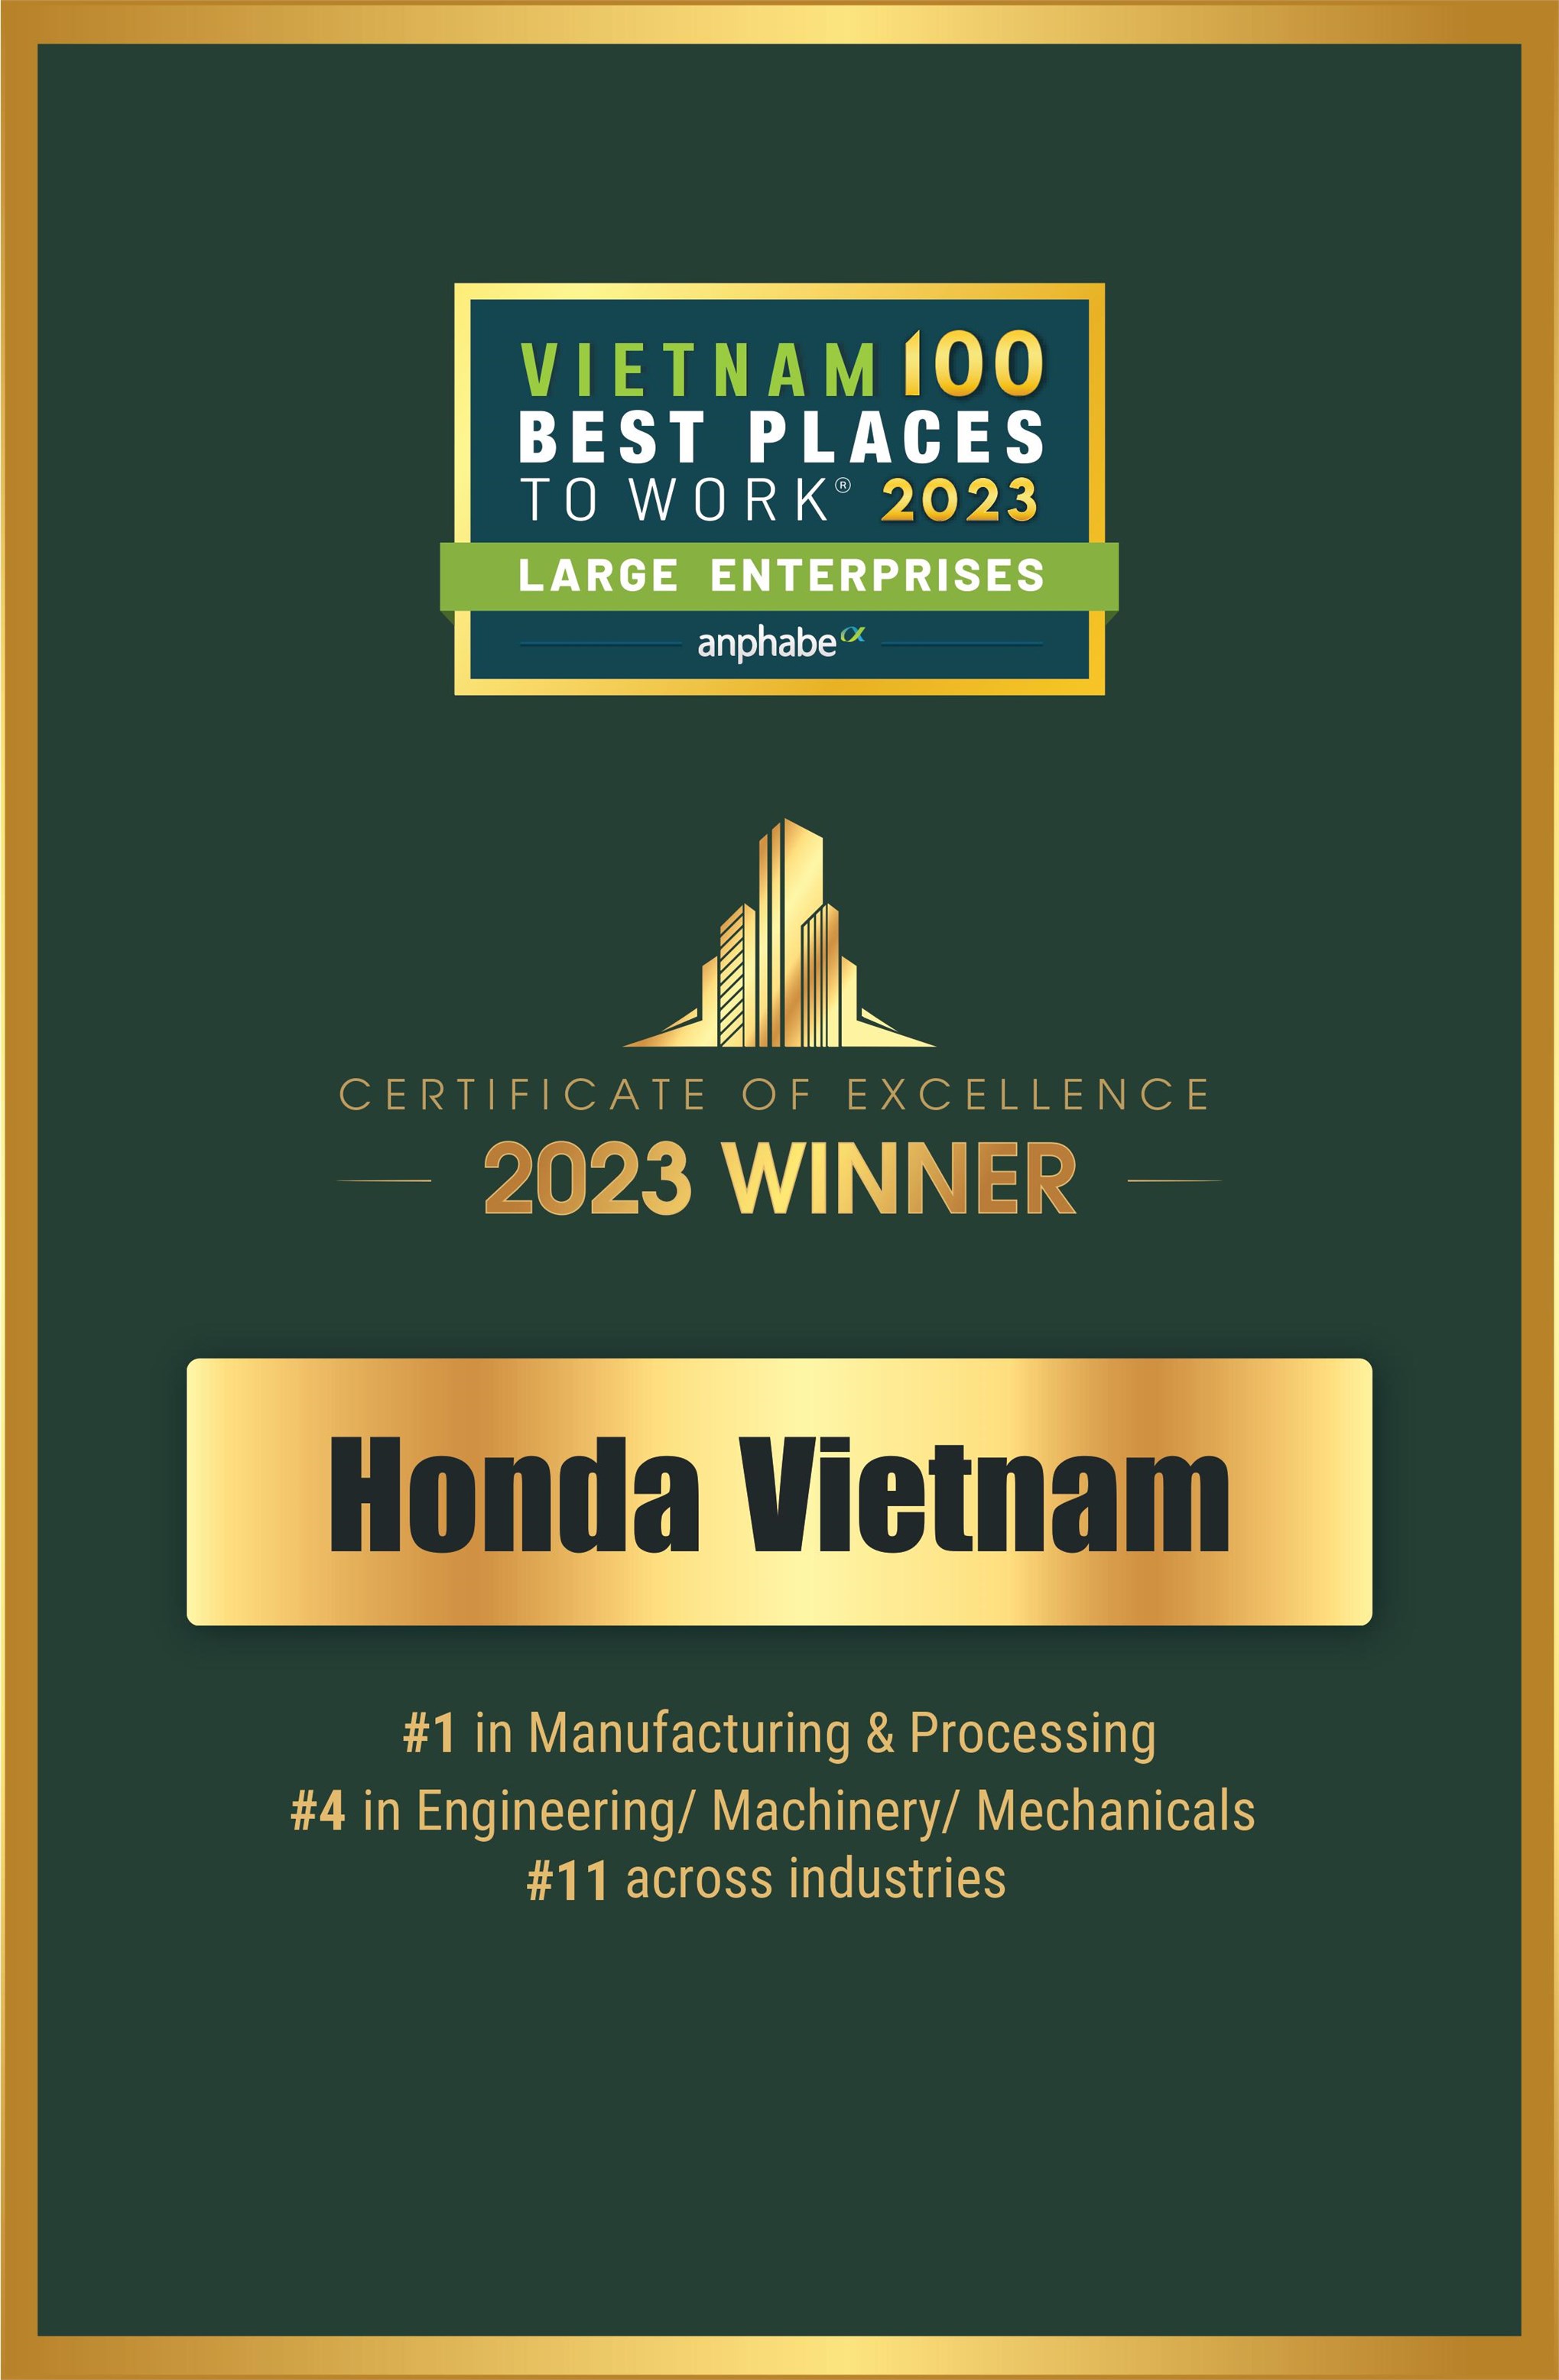 Honda Việt Nam tiếp tục giữ vững vị trí Top 1 trong ngành Sản xuất/Hóa chất năm 2023